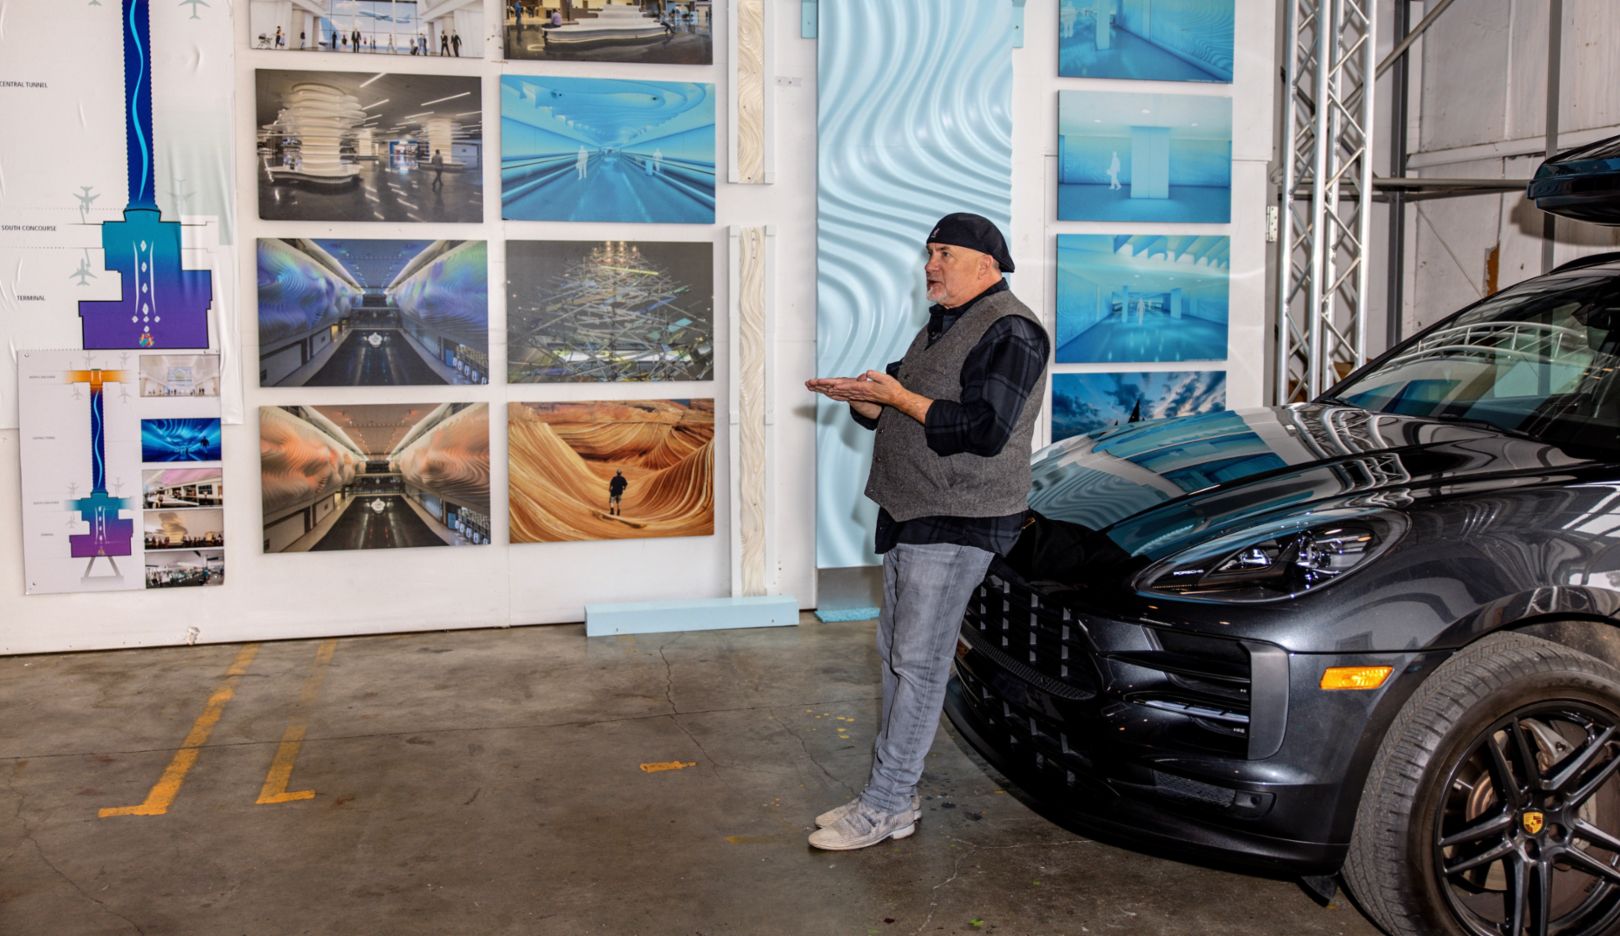 Parkeerplek in de studio: Gordon Huether met zijn Porsche Macan S voor opnames van zijn werken in Napa, Californië, VS.